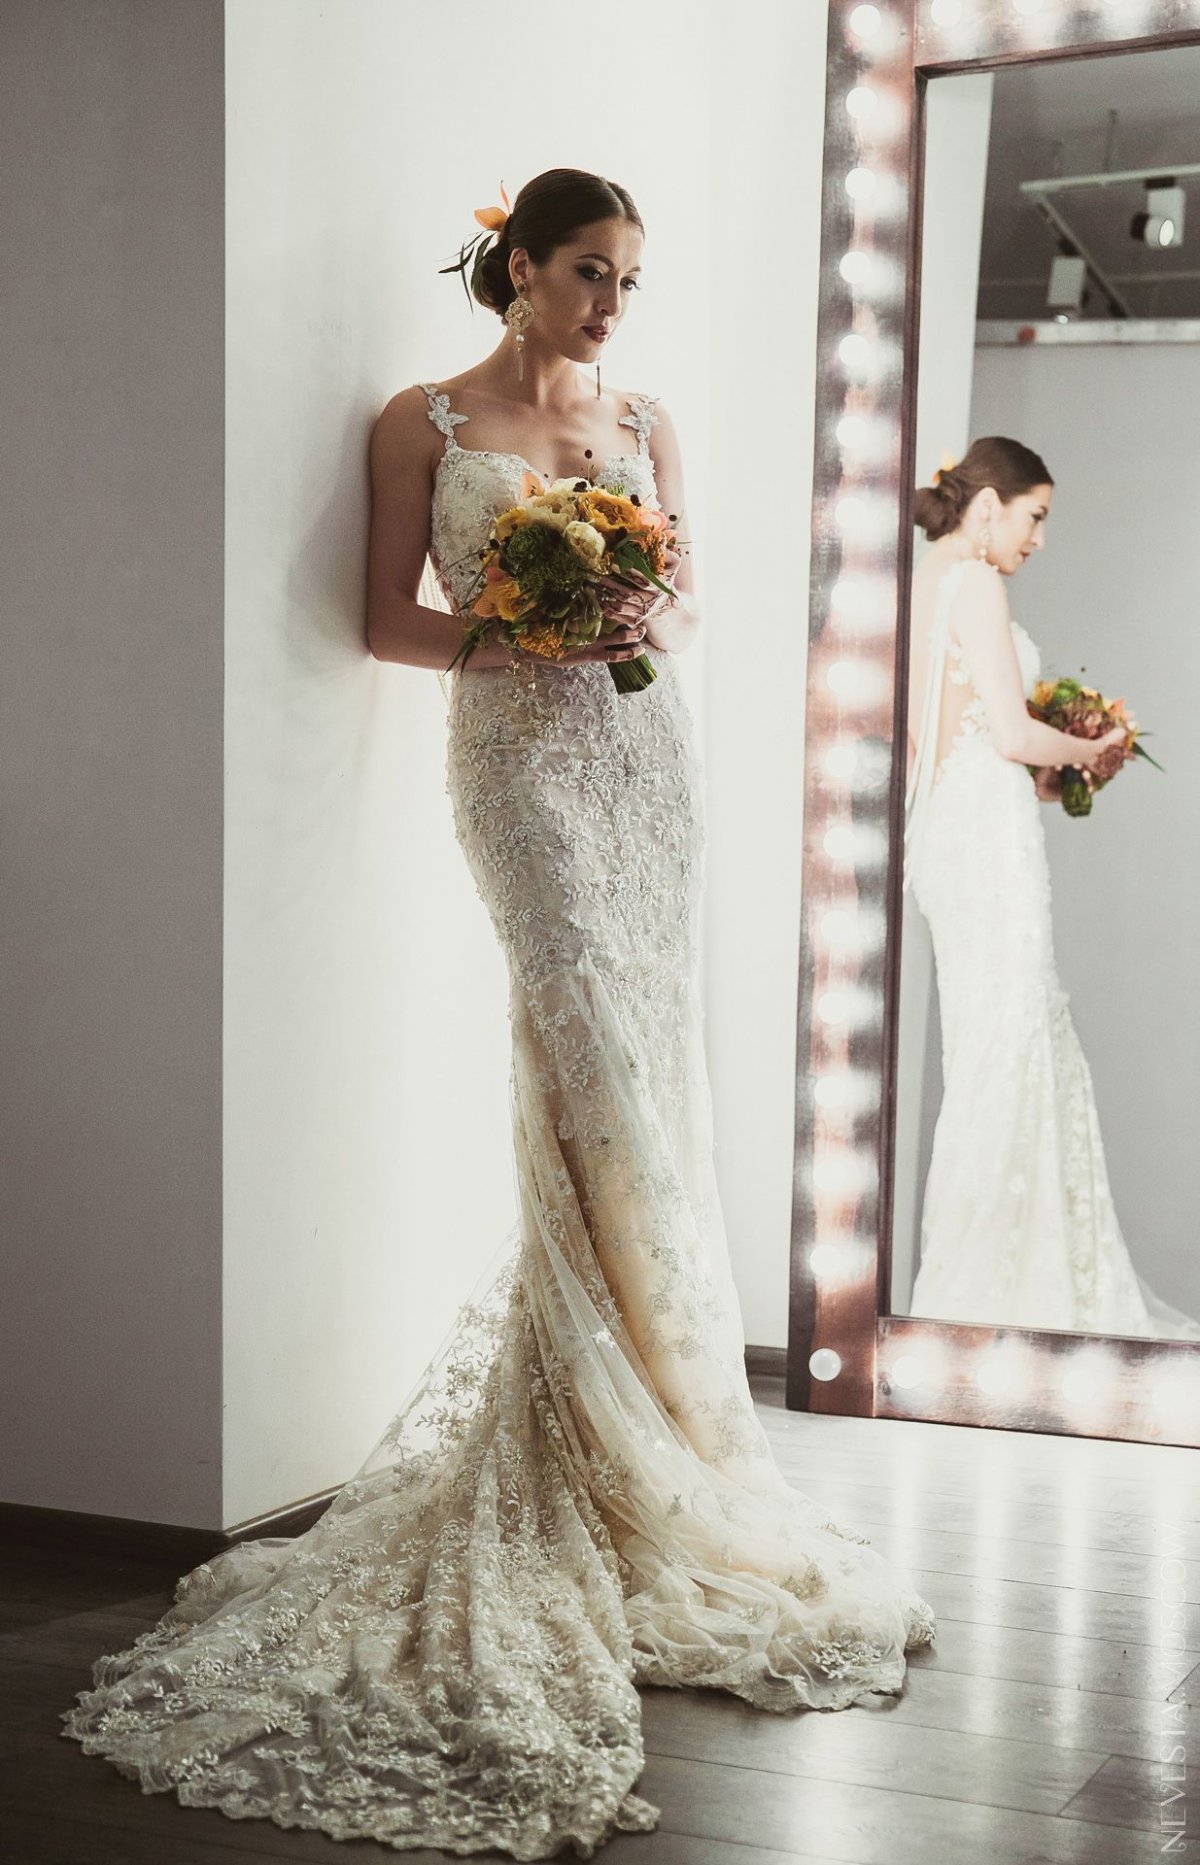 Анастасия Меськова примеряет свадебное платье